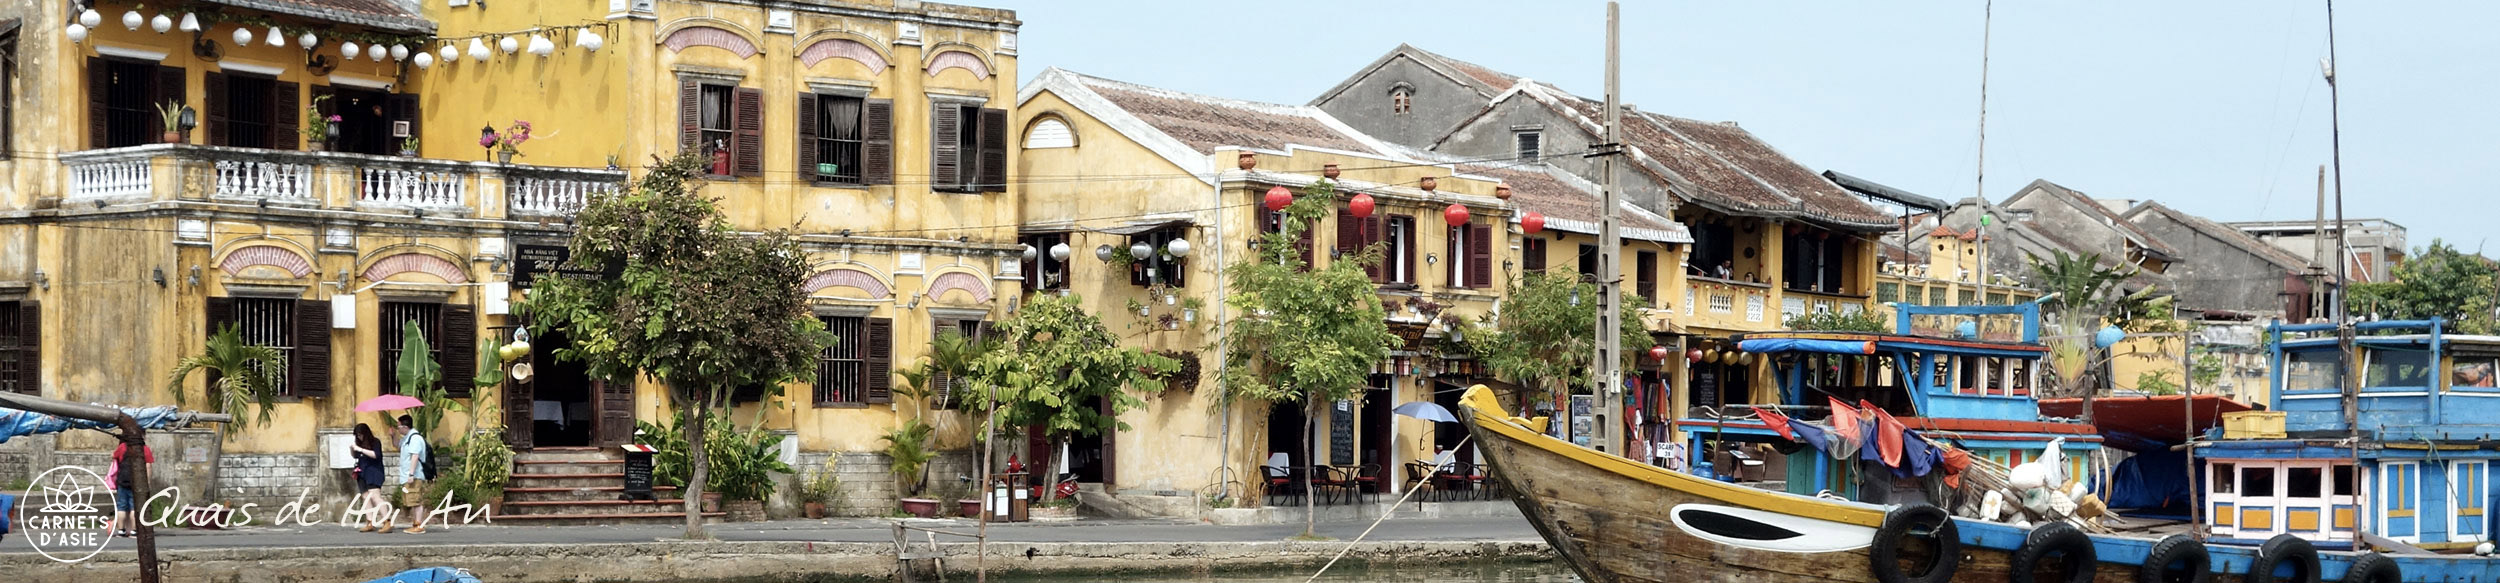 Quai de la vieille ville de Hoi An au Vietnam